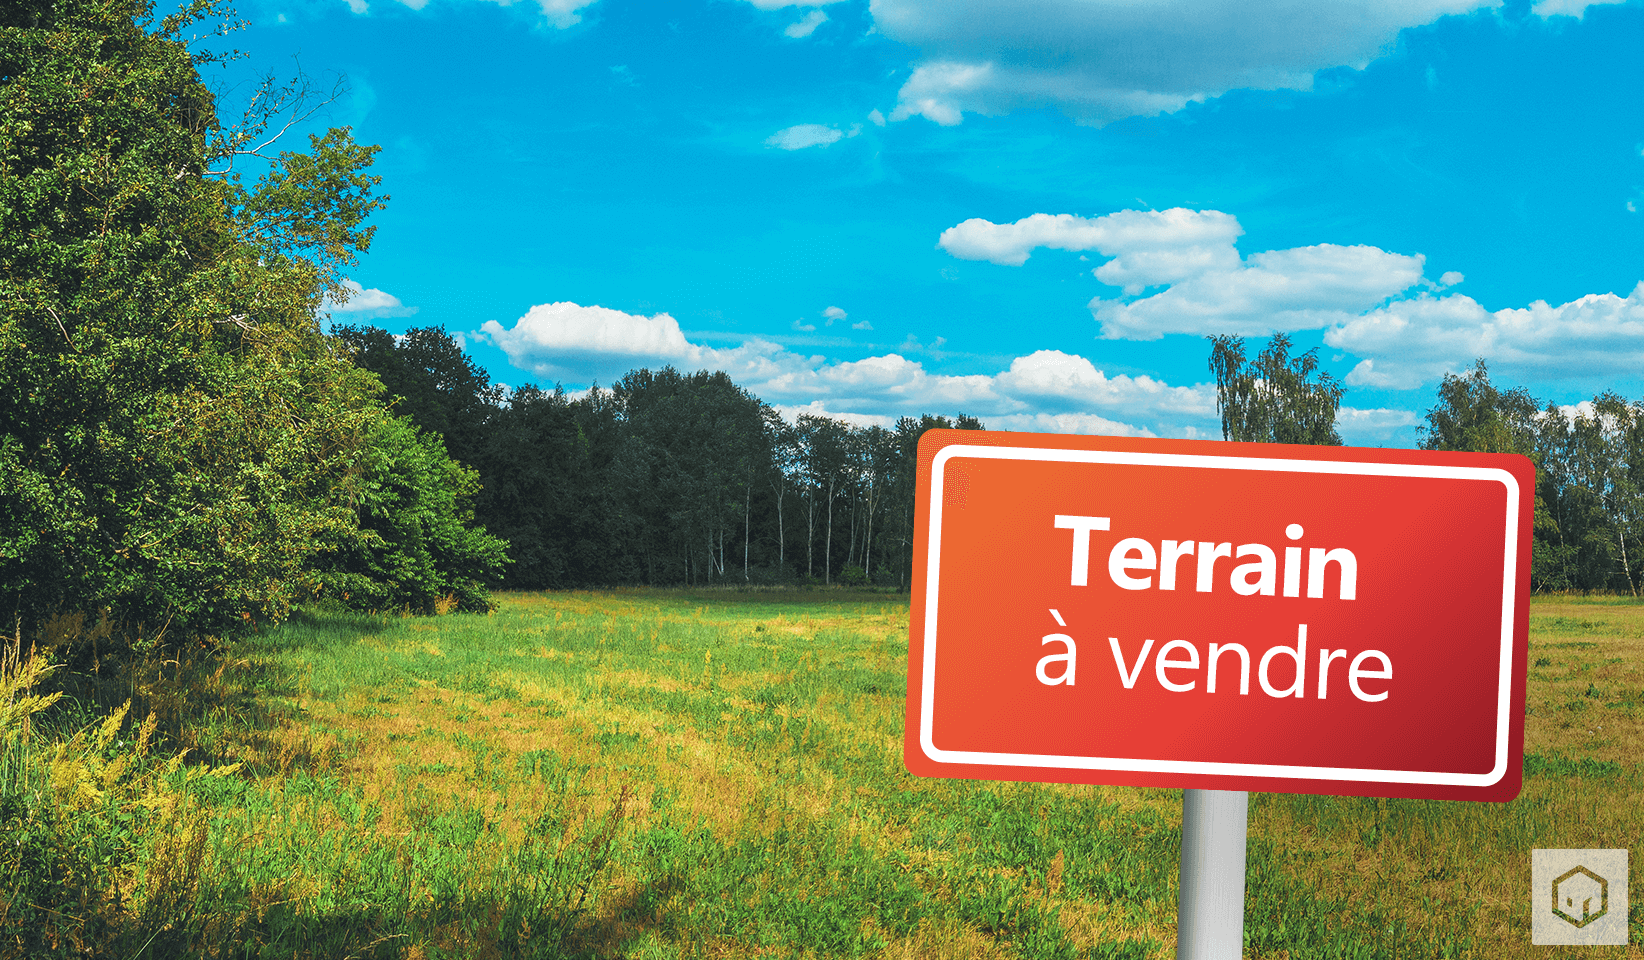 Terrain à vendre 327.00m² à Saint-Aubin-du-Cormier - Photo 1